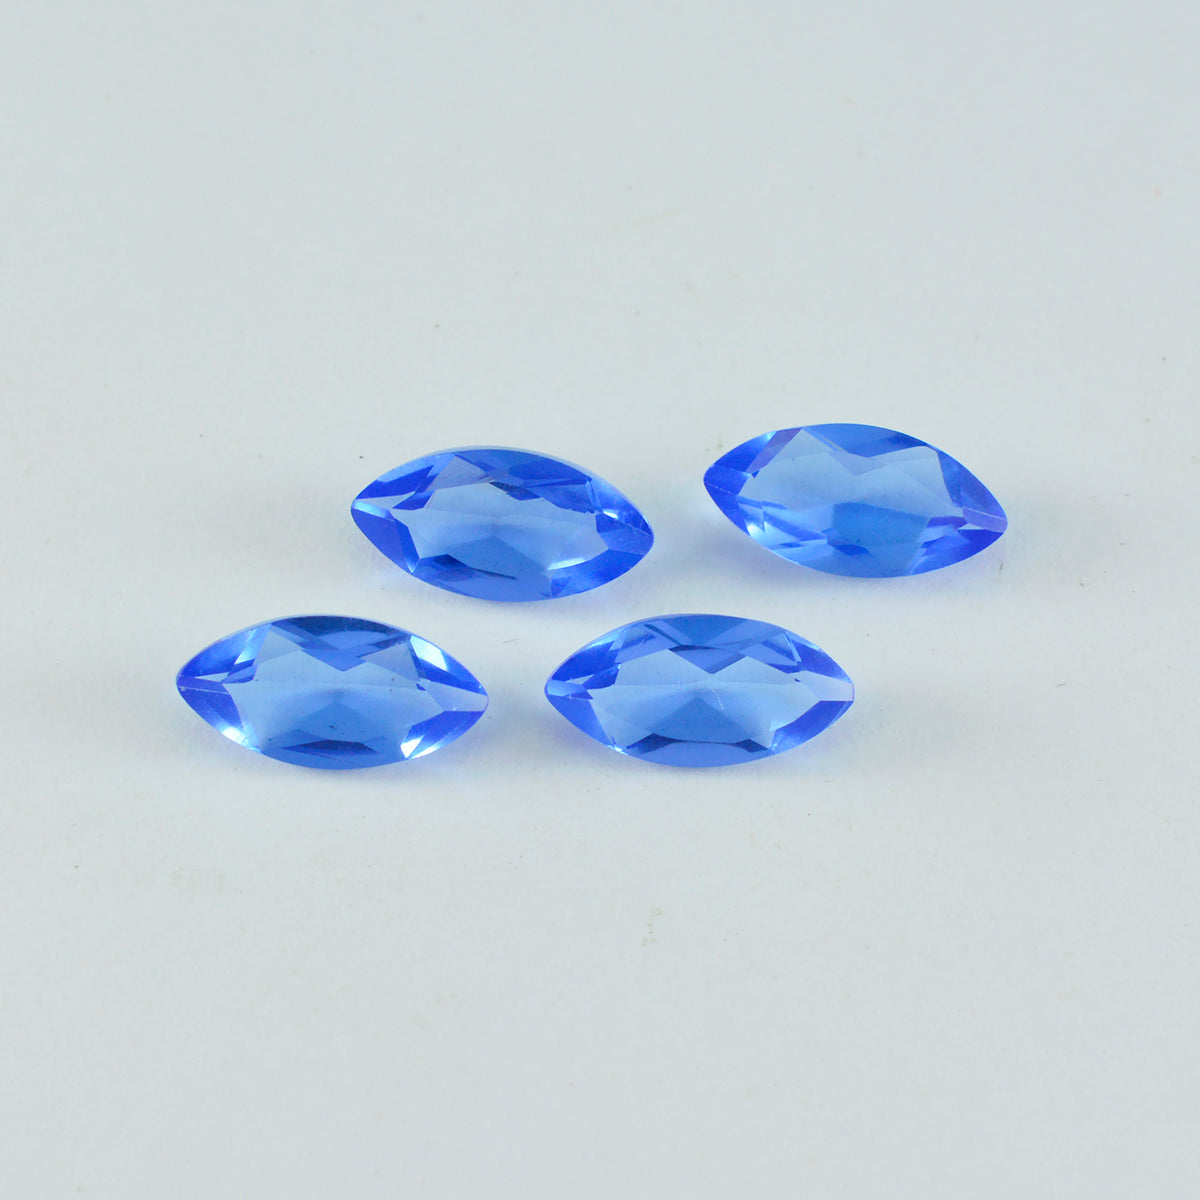 Riyogems 1 Stück blauer Saphir, CZ, facettiert, 8 x 16 mm, Marquise-Form, erstaunlicher Qualitätsstein